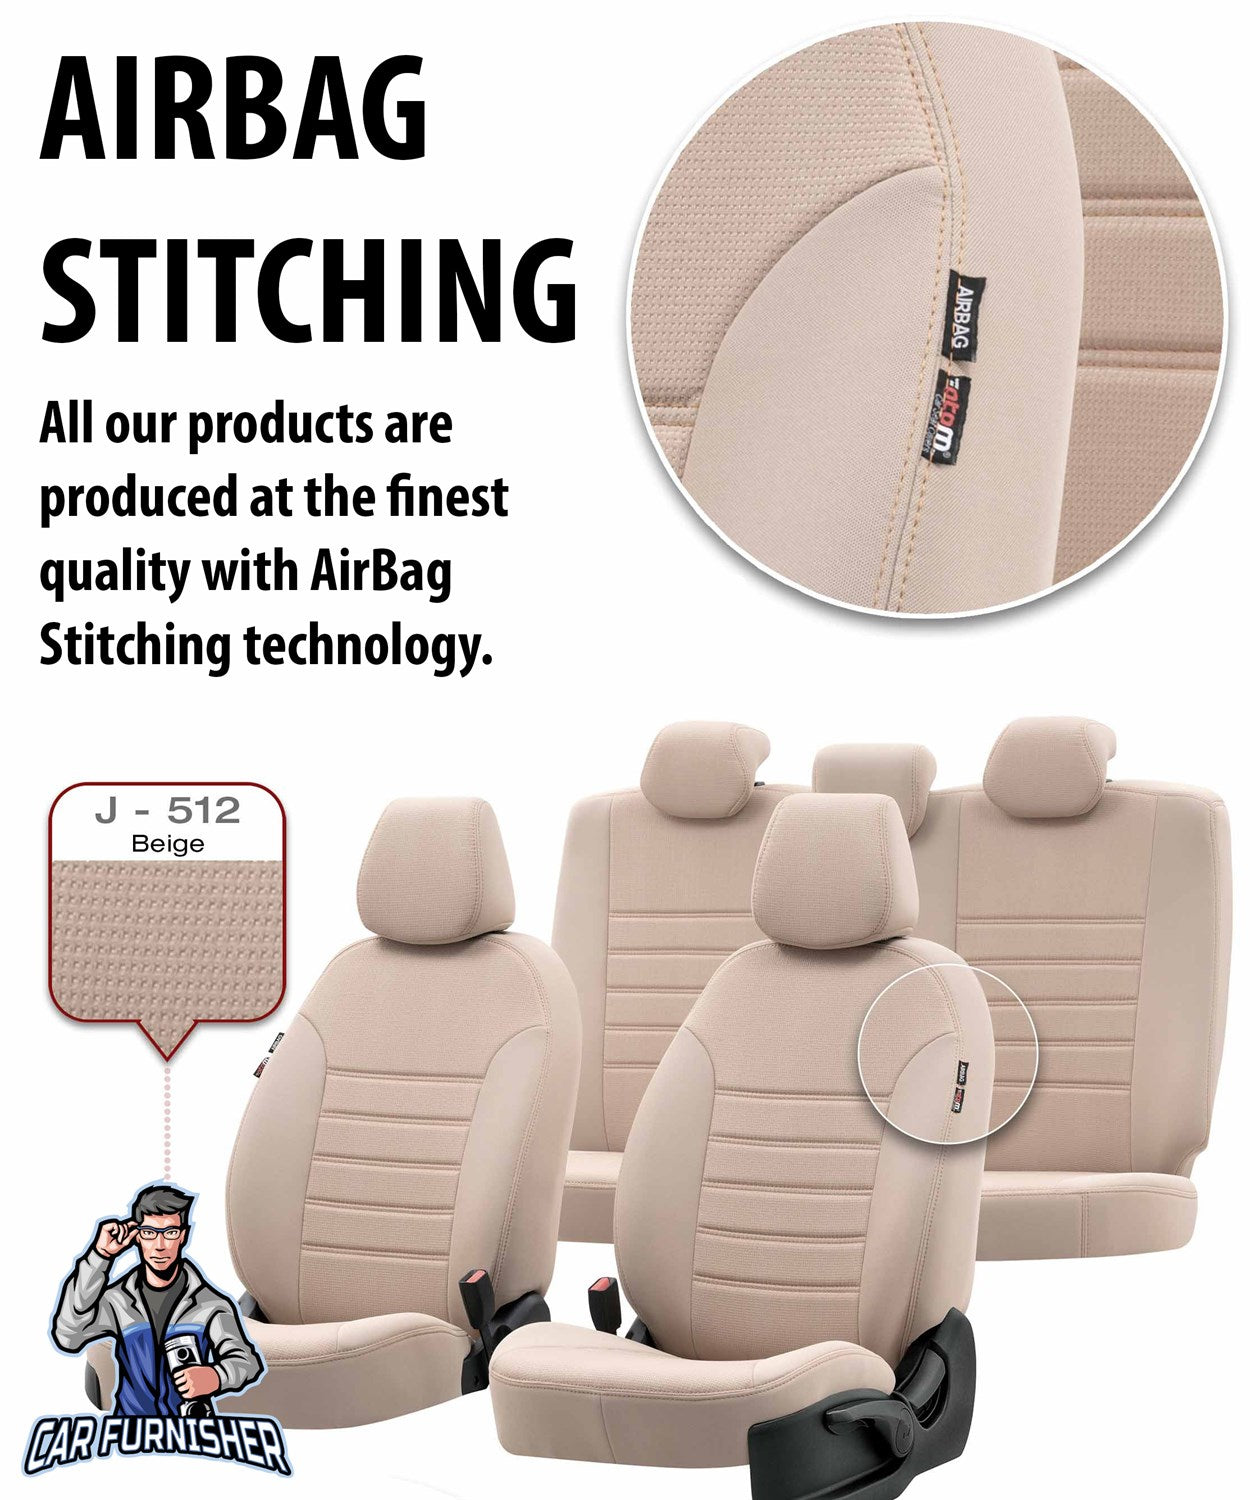 Seat Ateca Seat Covers Original Jacquard Design Smoked Black Jacquard Fabric